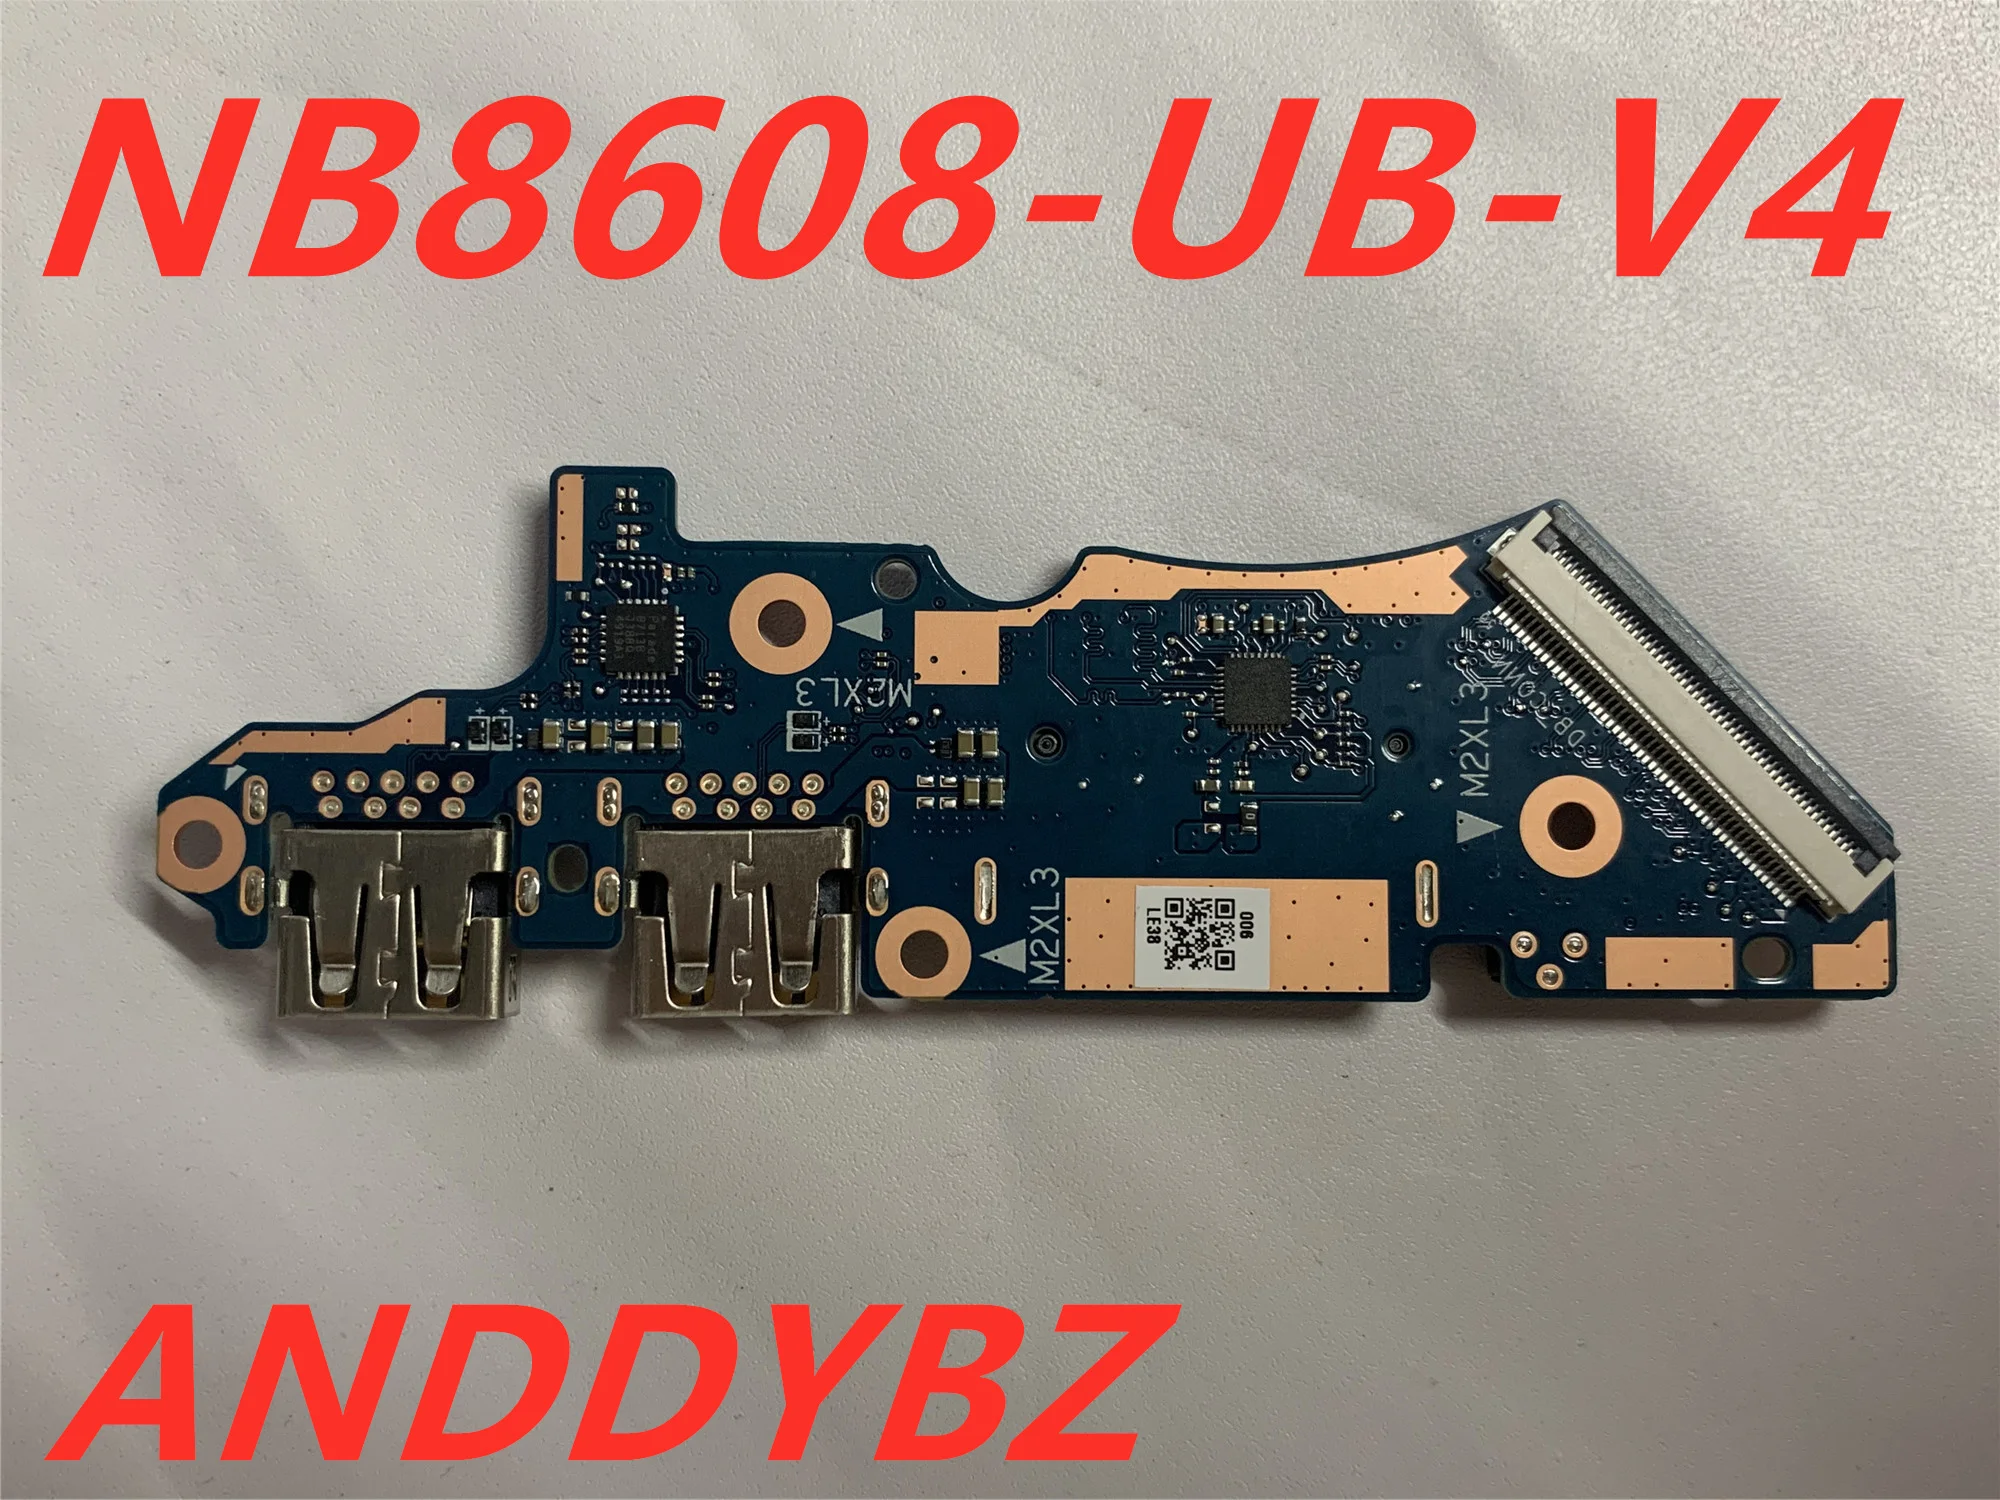 Genuine Board for LENOVO Ideapad S540-15IWL USB Power Button Board NB8608-UB-V4 100% TESED OK